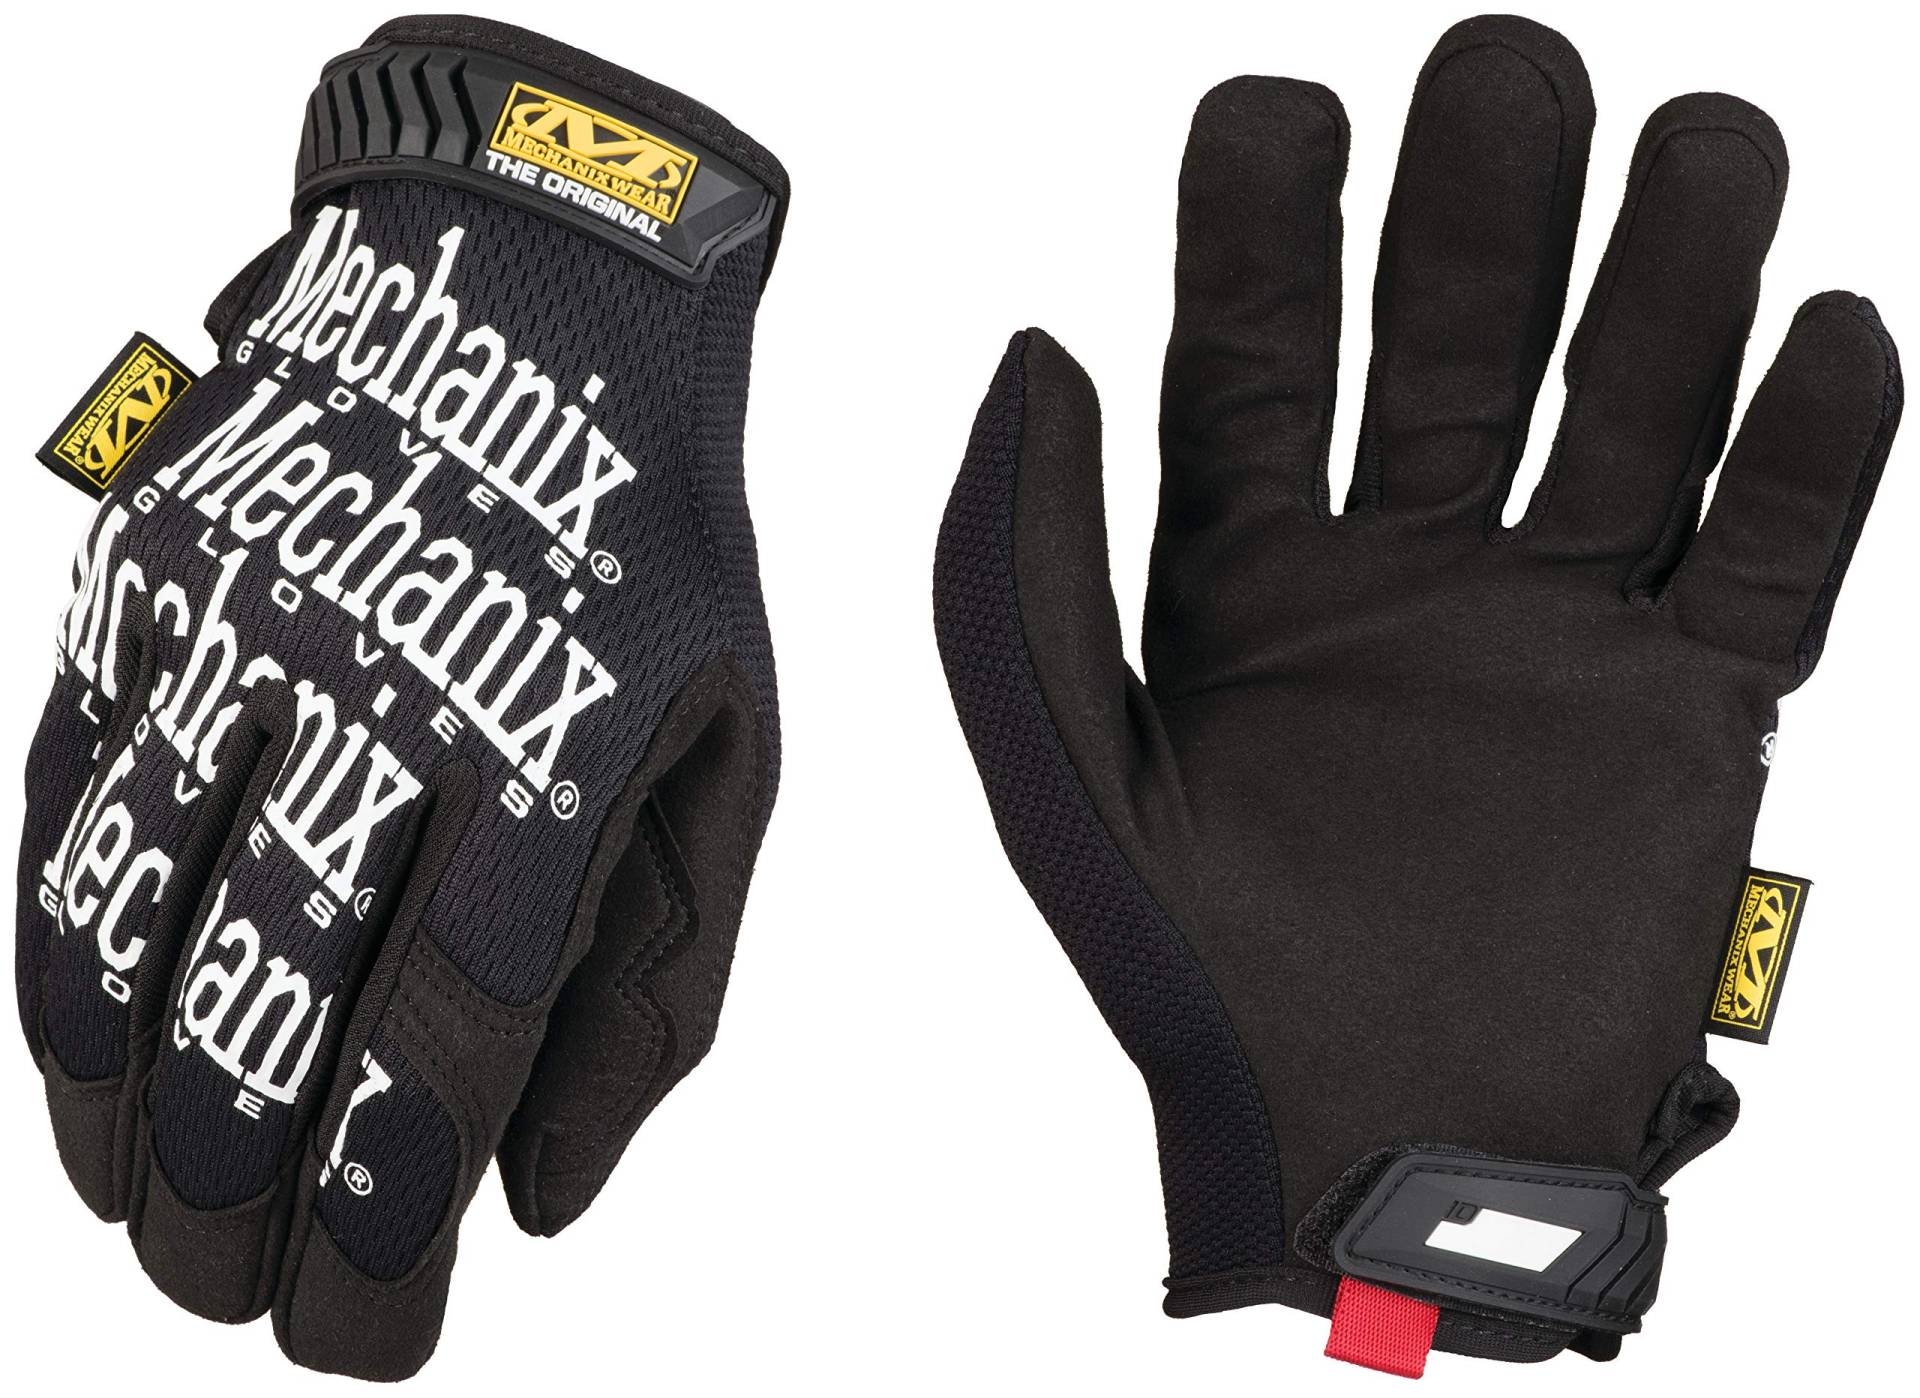 Mechanix Wear: Original Arbeitshandschuh mit sicherer Passform, Kunstleder-Performance-Handschuhe für den Mehrzweckeinsatz, langlebige, Touchscreen-fähige Sicherheitshandschuhe (Schwarz, Medium) von Mechanix Wear